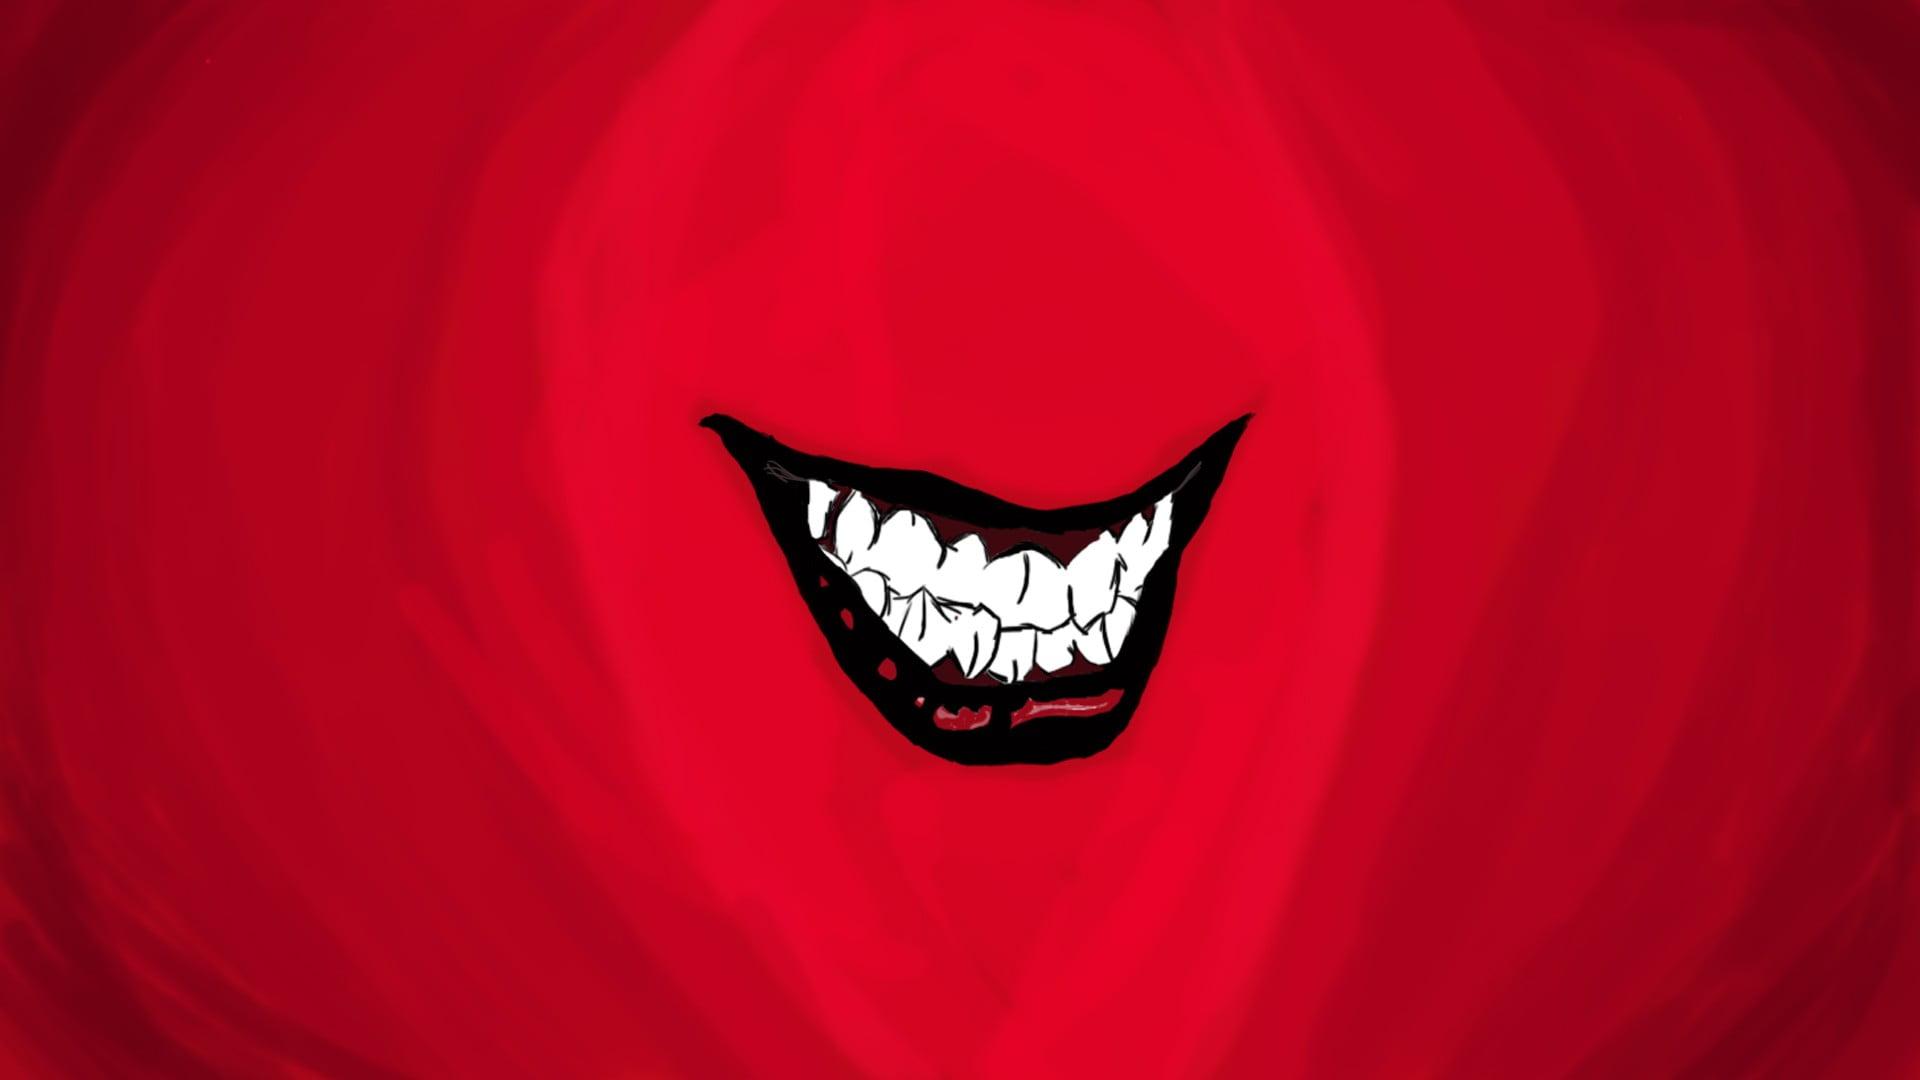 Red, White, And Black Smiling Teeth Illustration, Joker